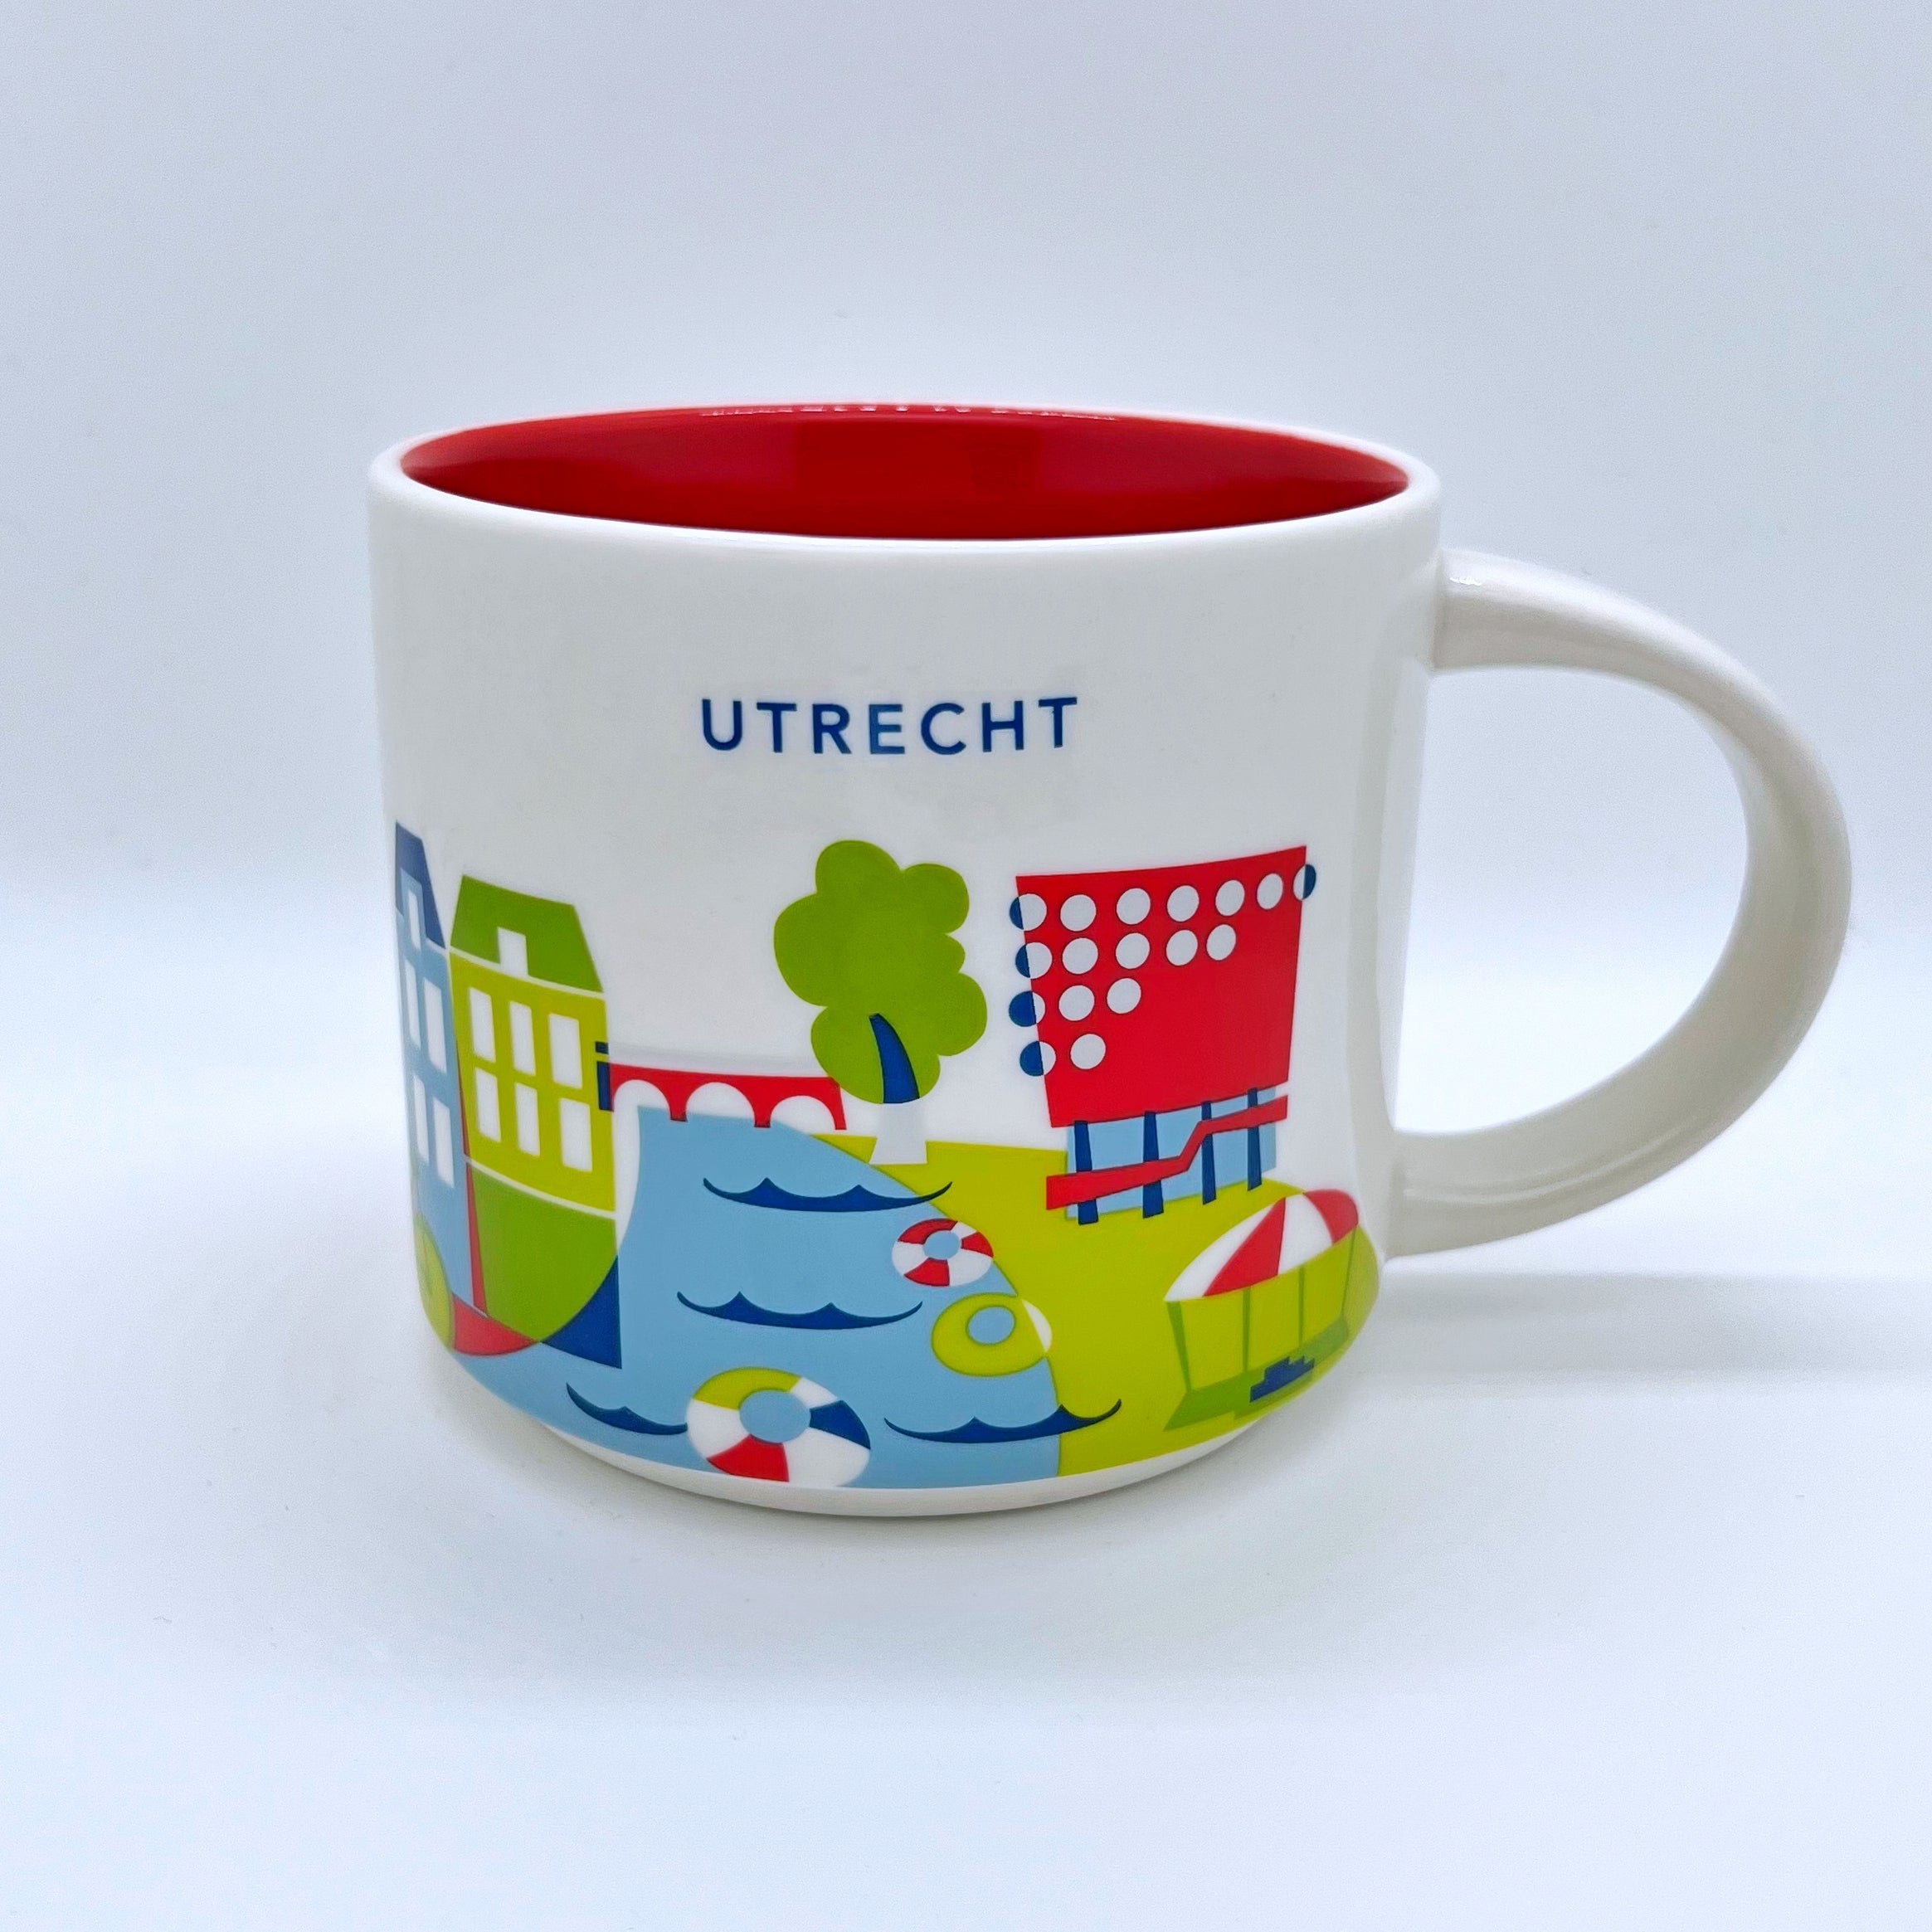 Kaffee Tee und Cappuccino Tasse von Starbucks mit gemalten Bildern aus der Stadt Utrecht